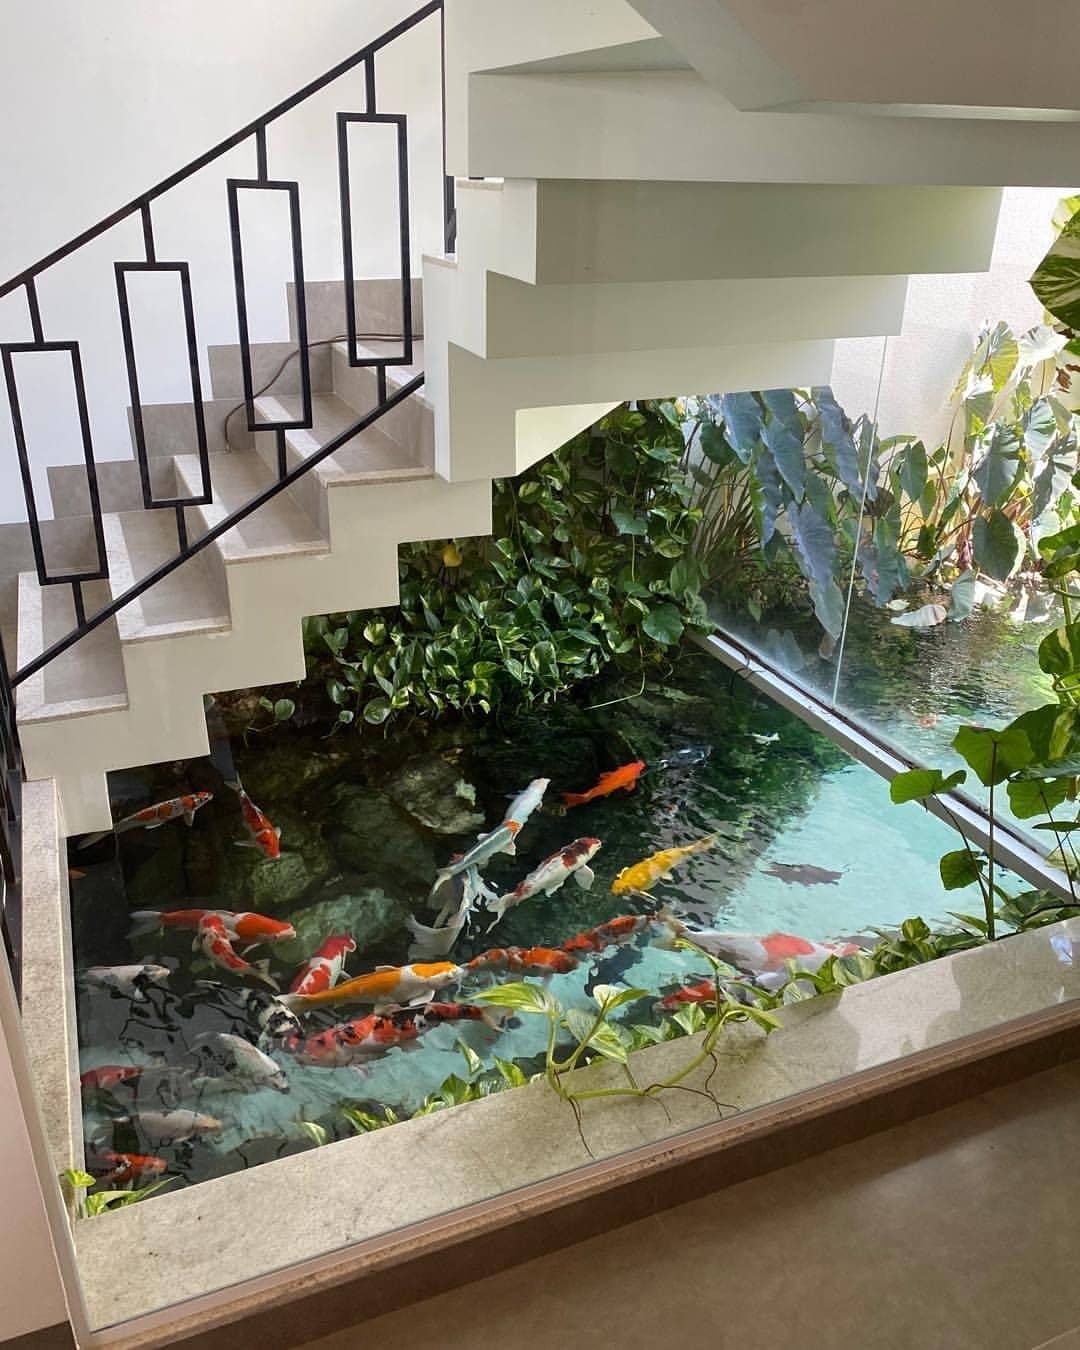 Аквариум в водоеме. Аквариум под лестницей в доме. Водопад с рыбками в аквариуме. Аквариум в интерьере зимнего сада. Аквариум с водопадом.